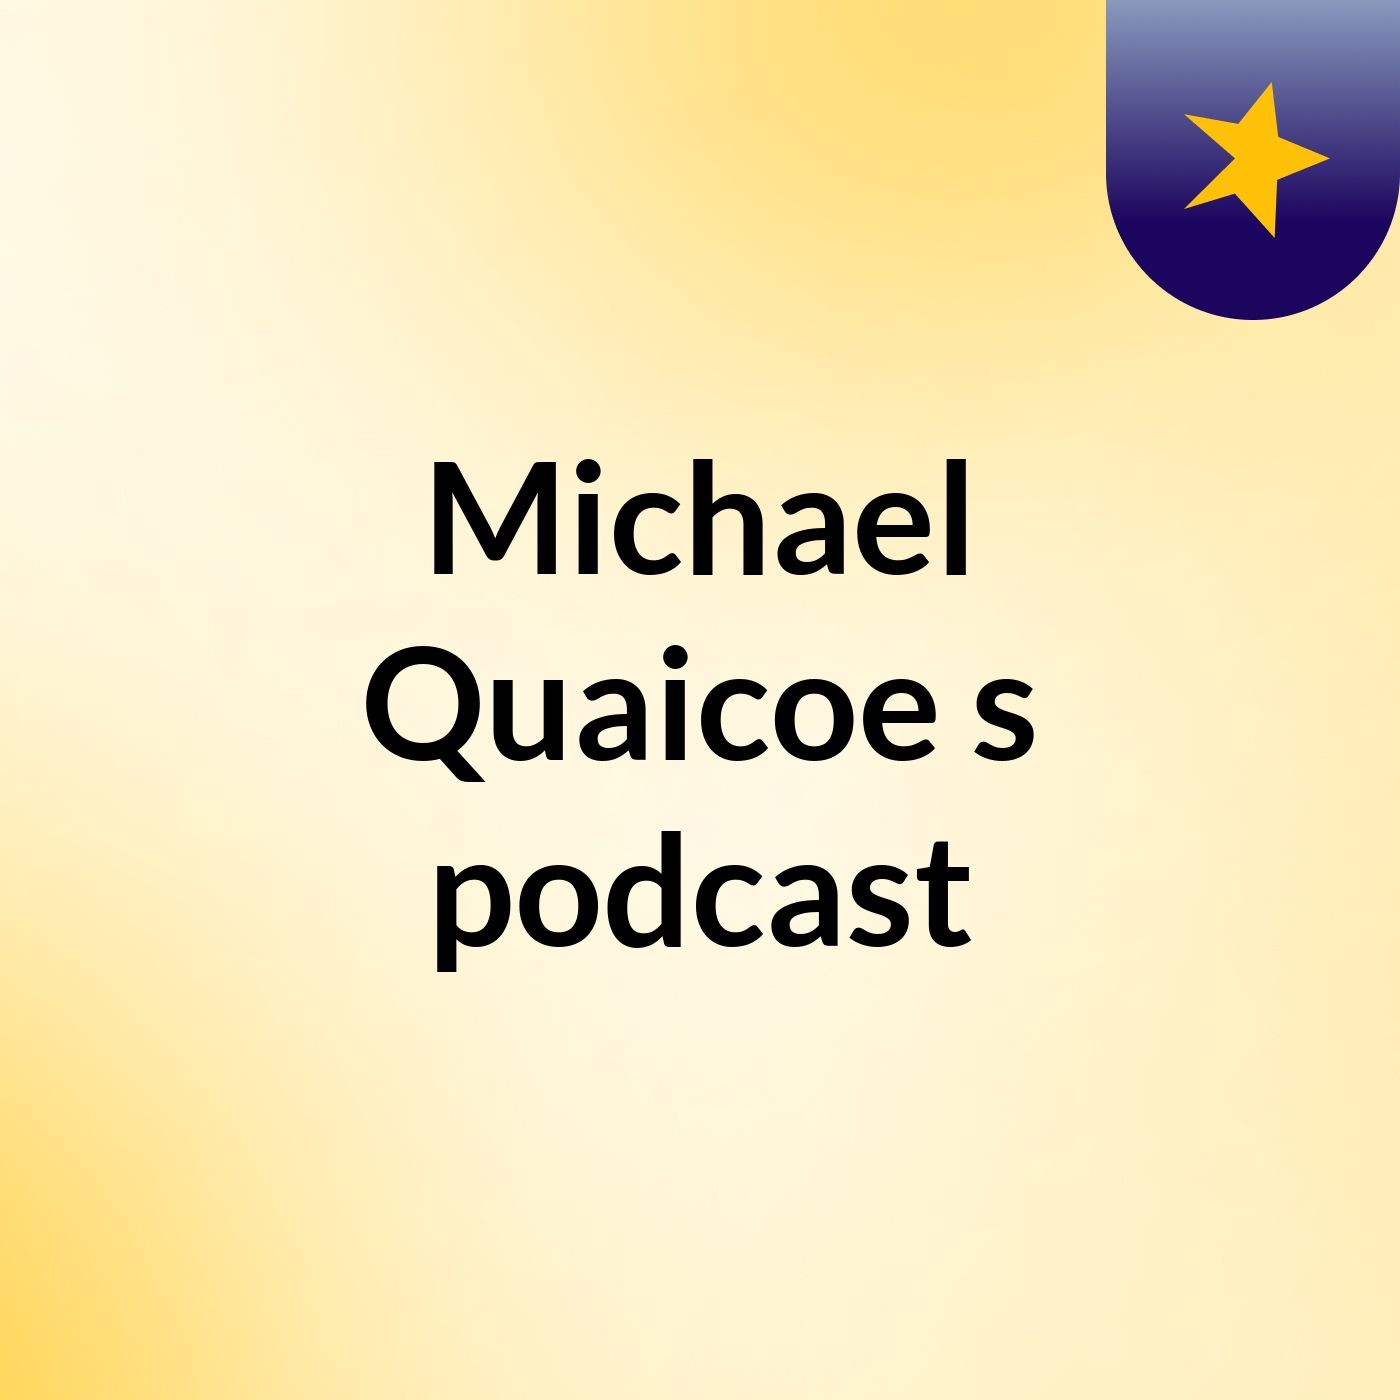 Michael Quaicoe's podcast